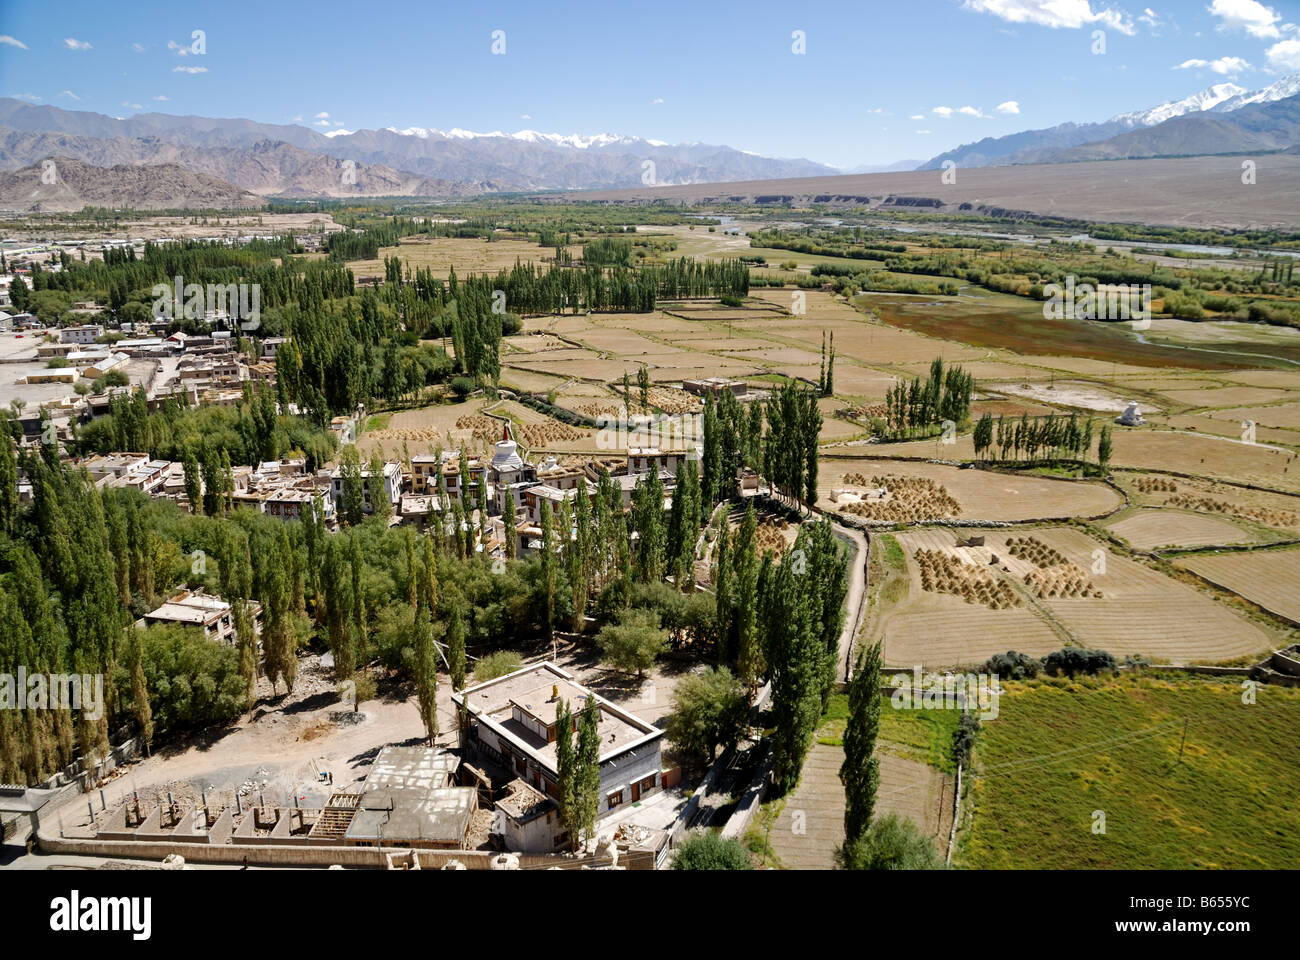 La vista dei campi di orzo dal monastero di Spitok durante la caduta in questo momento la fertile valle di Indus è rigogliosa e verde Foto Stock